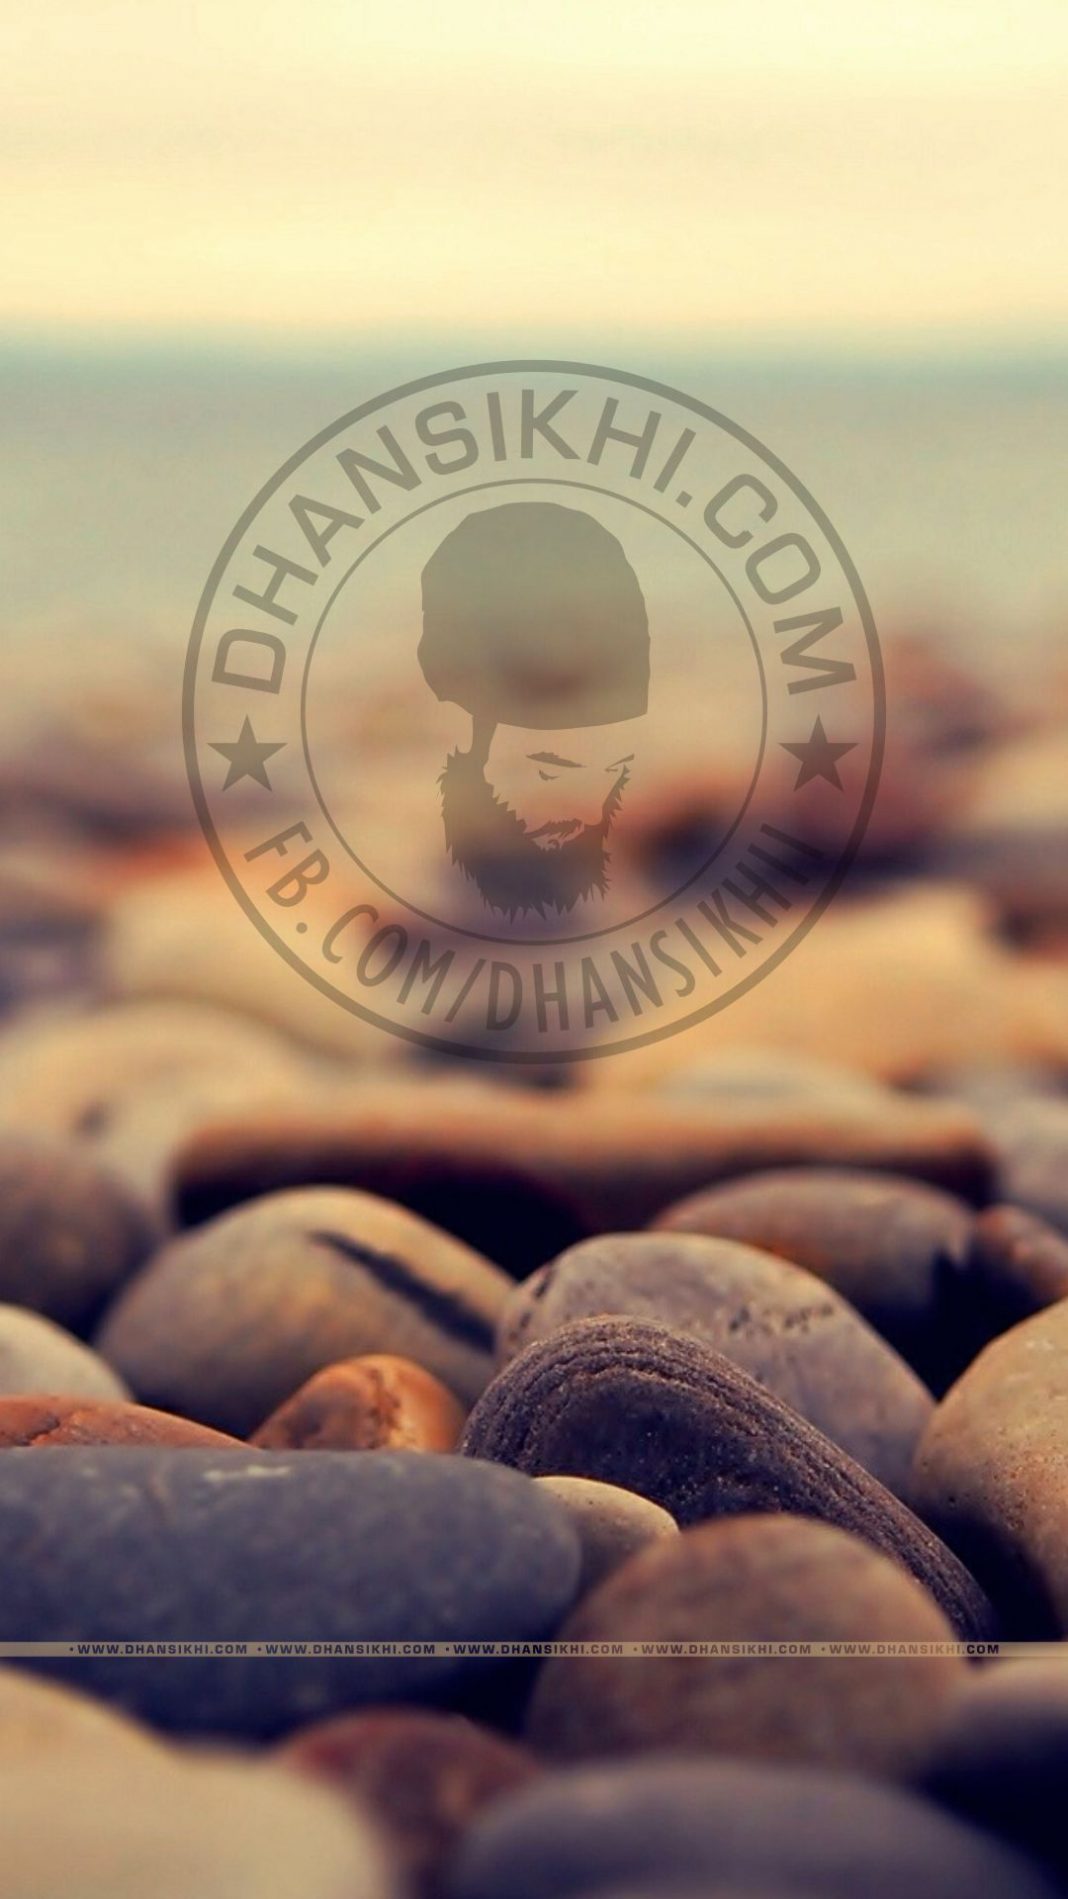 Dhansikhi logo with stones